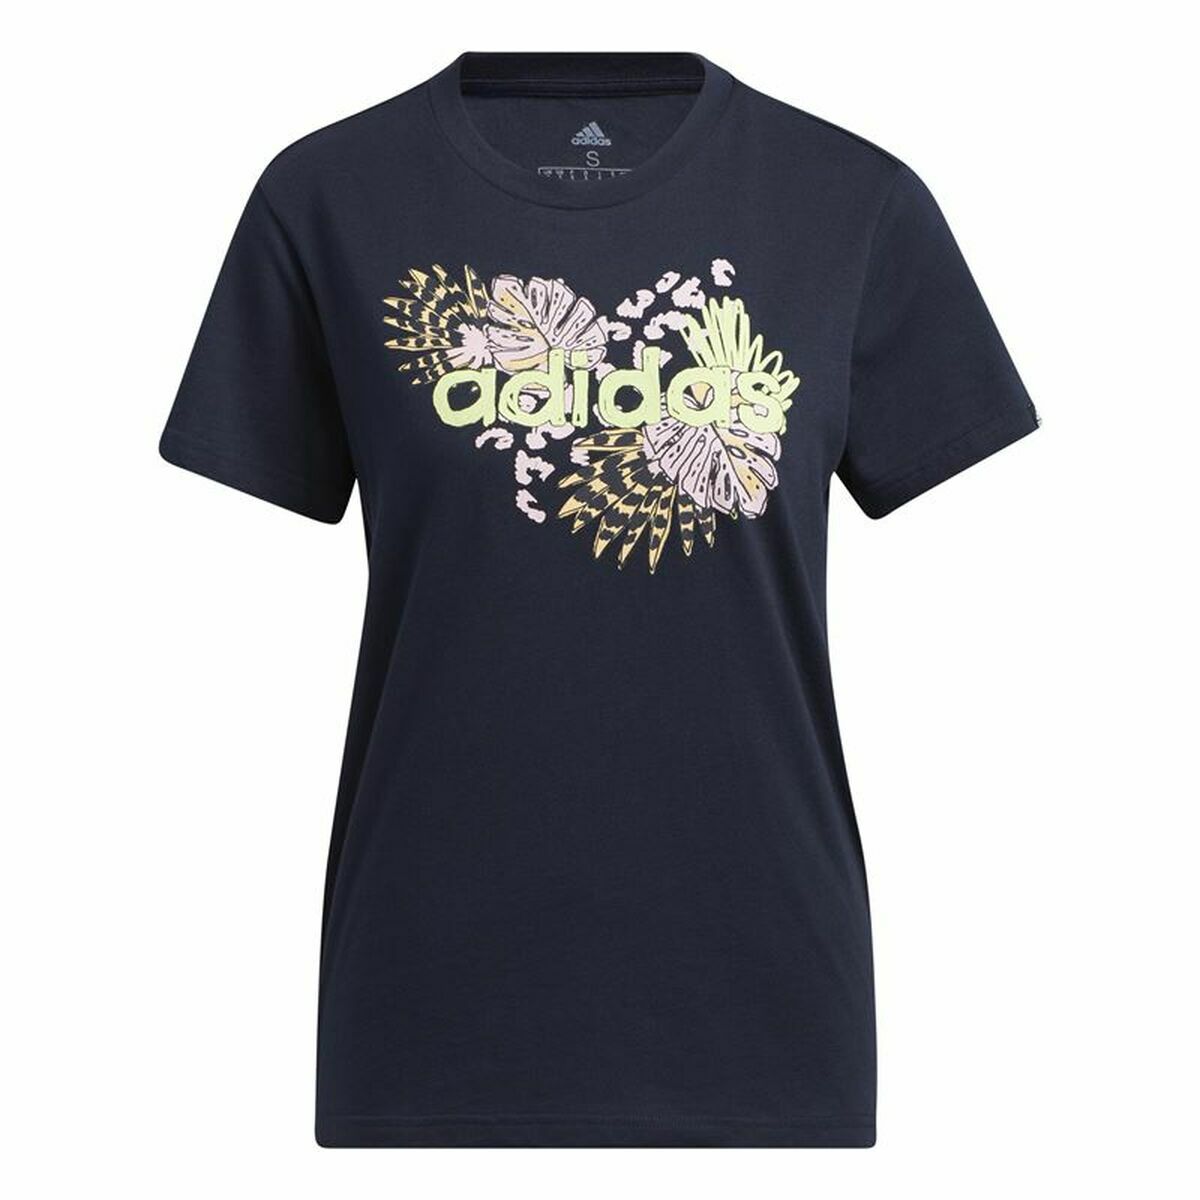 T-shirt à manches courtes femme Adidas Farm Print Graphic Bleu foncé